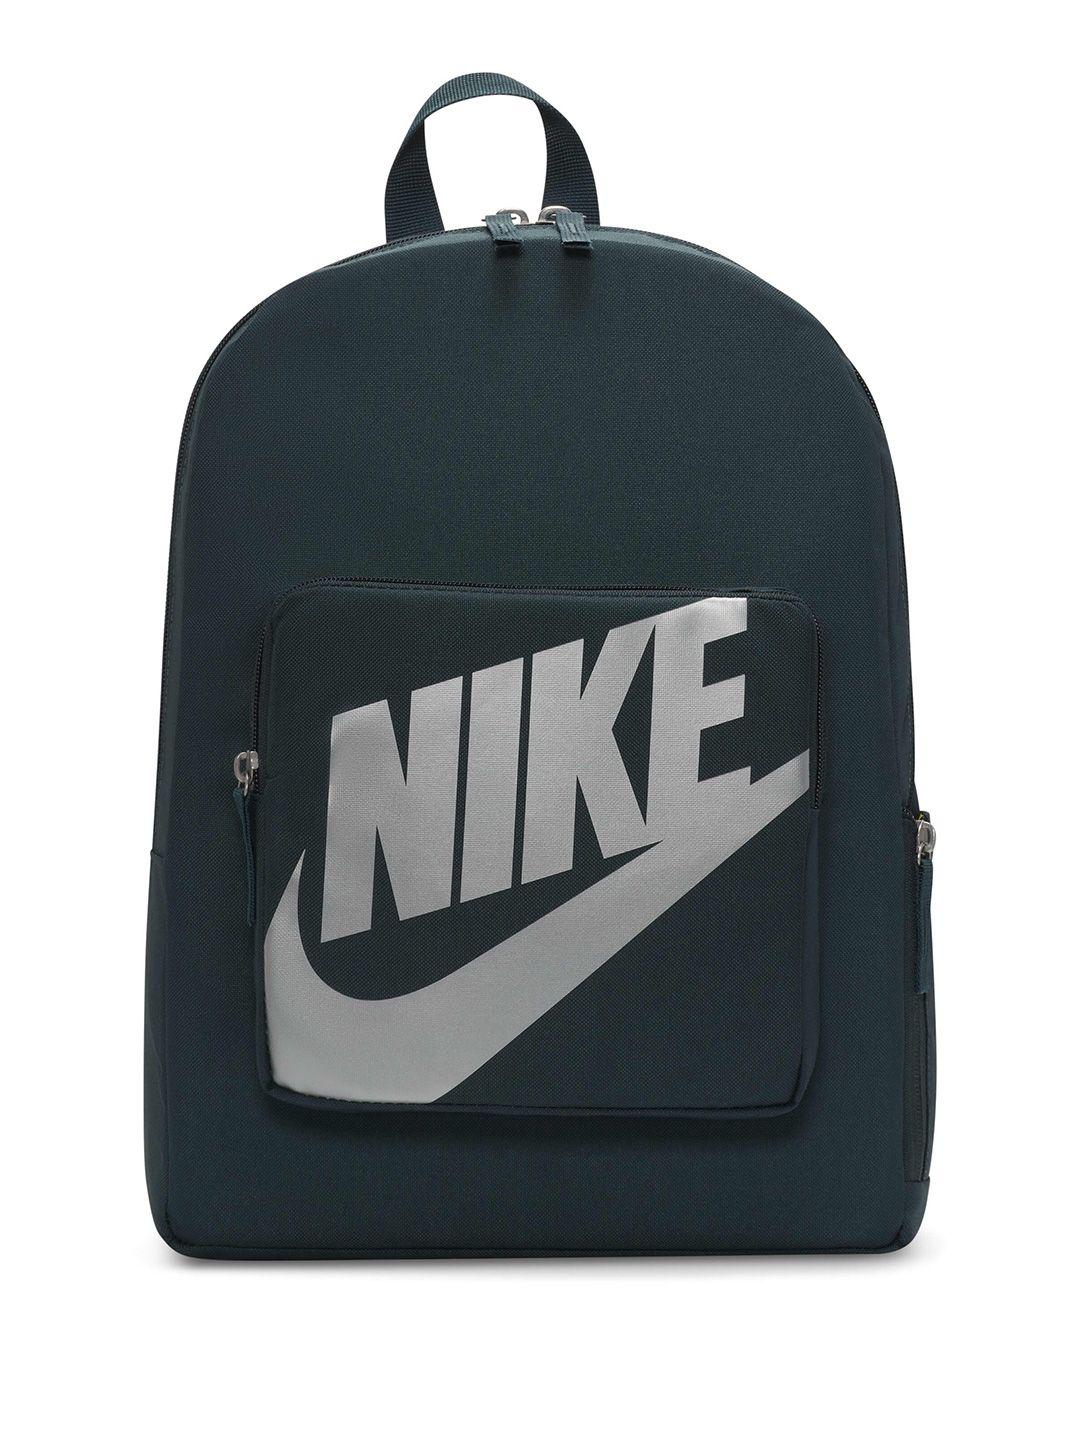 nike-kids-printed-backpack